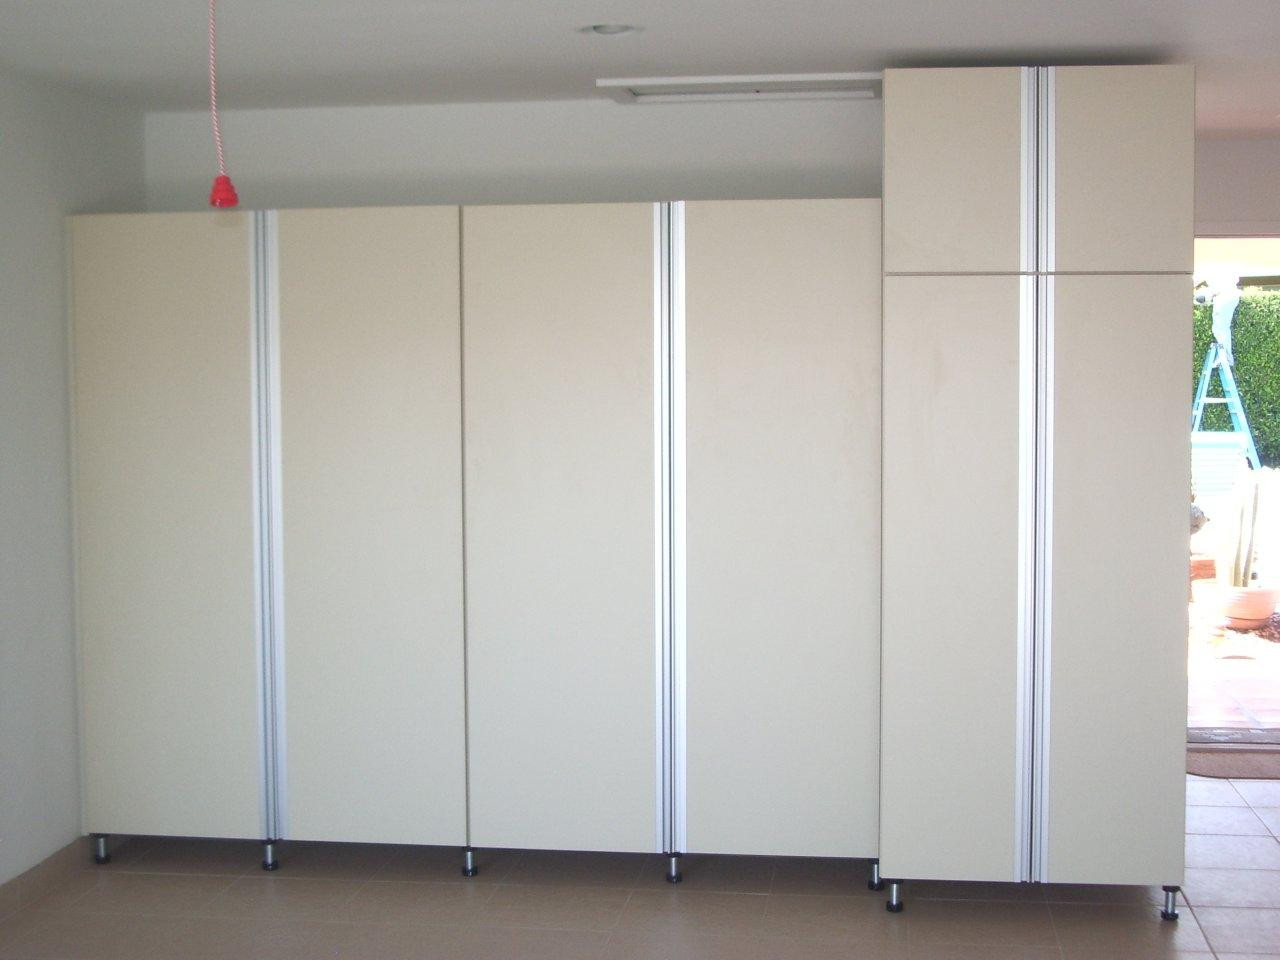 Best ideas about Wood Garage Storage Cabinets
. Save or Pin Garage storage cabinets Now.